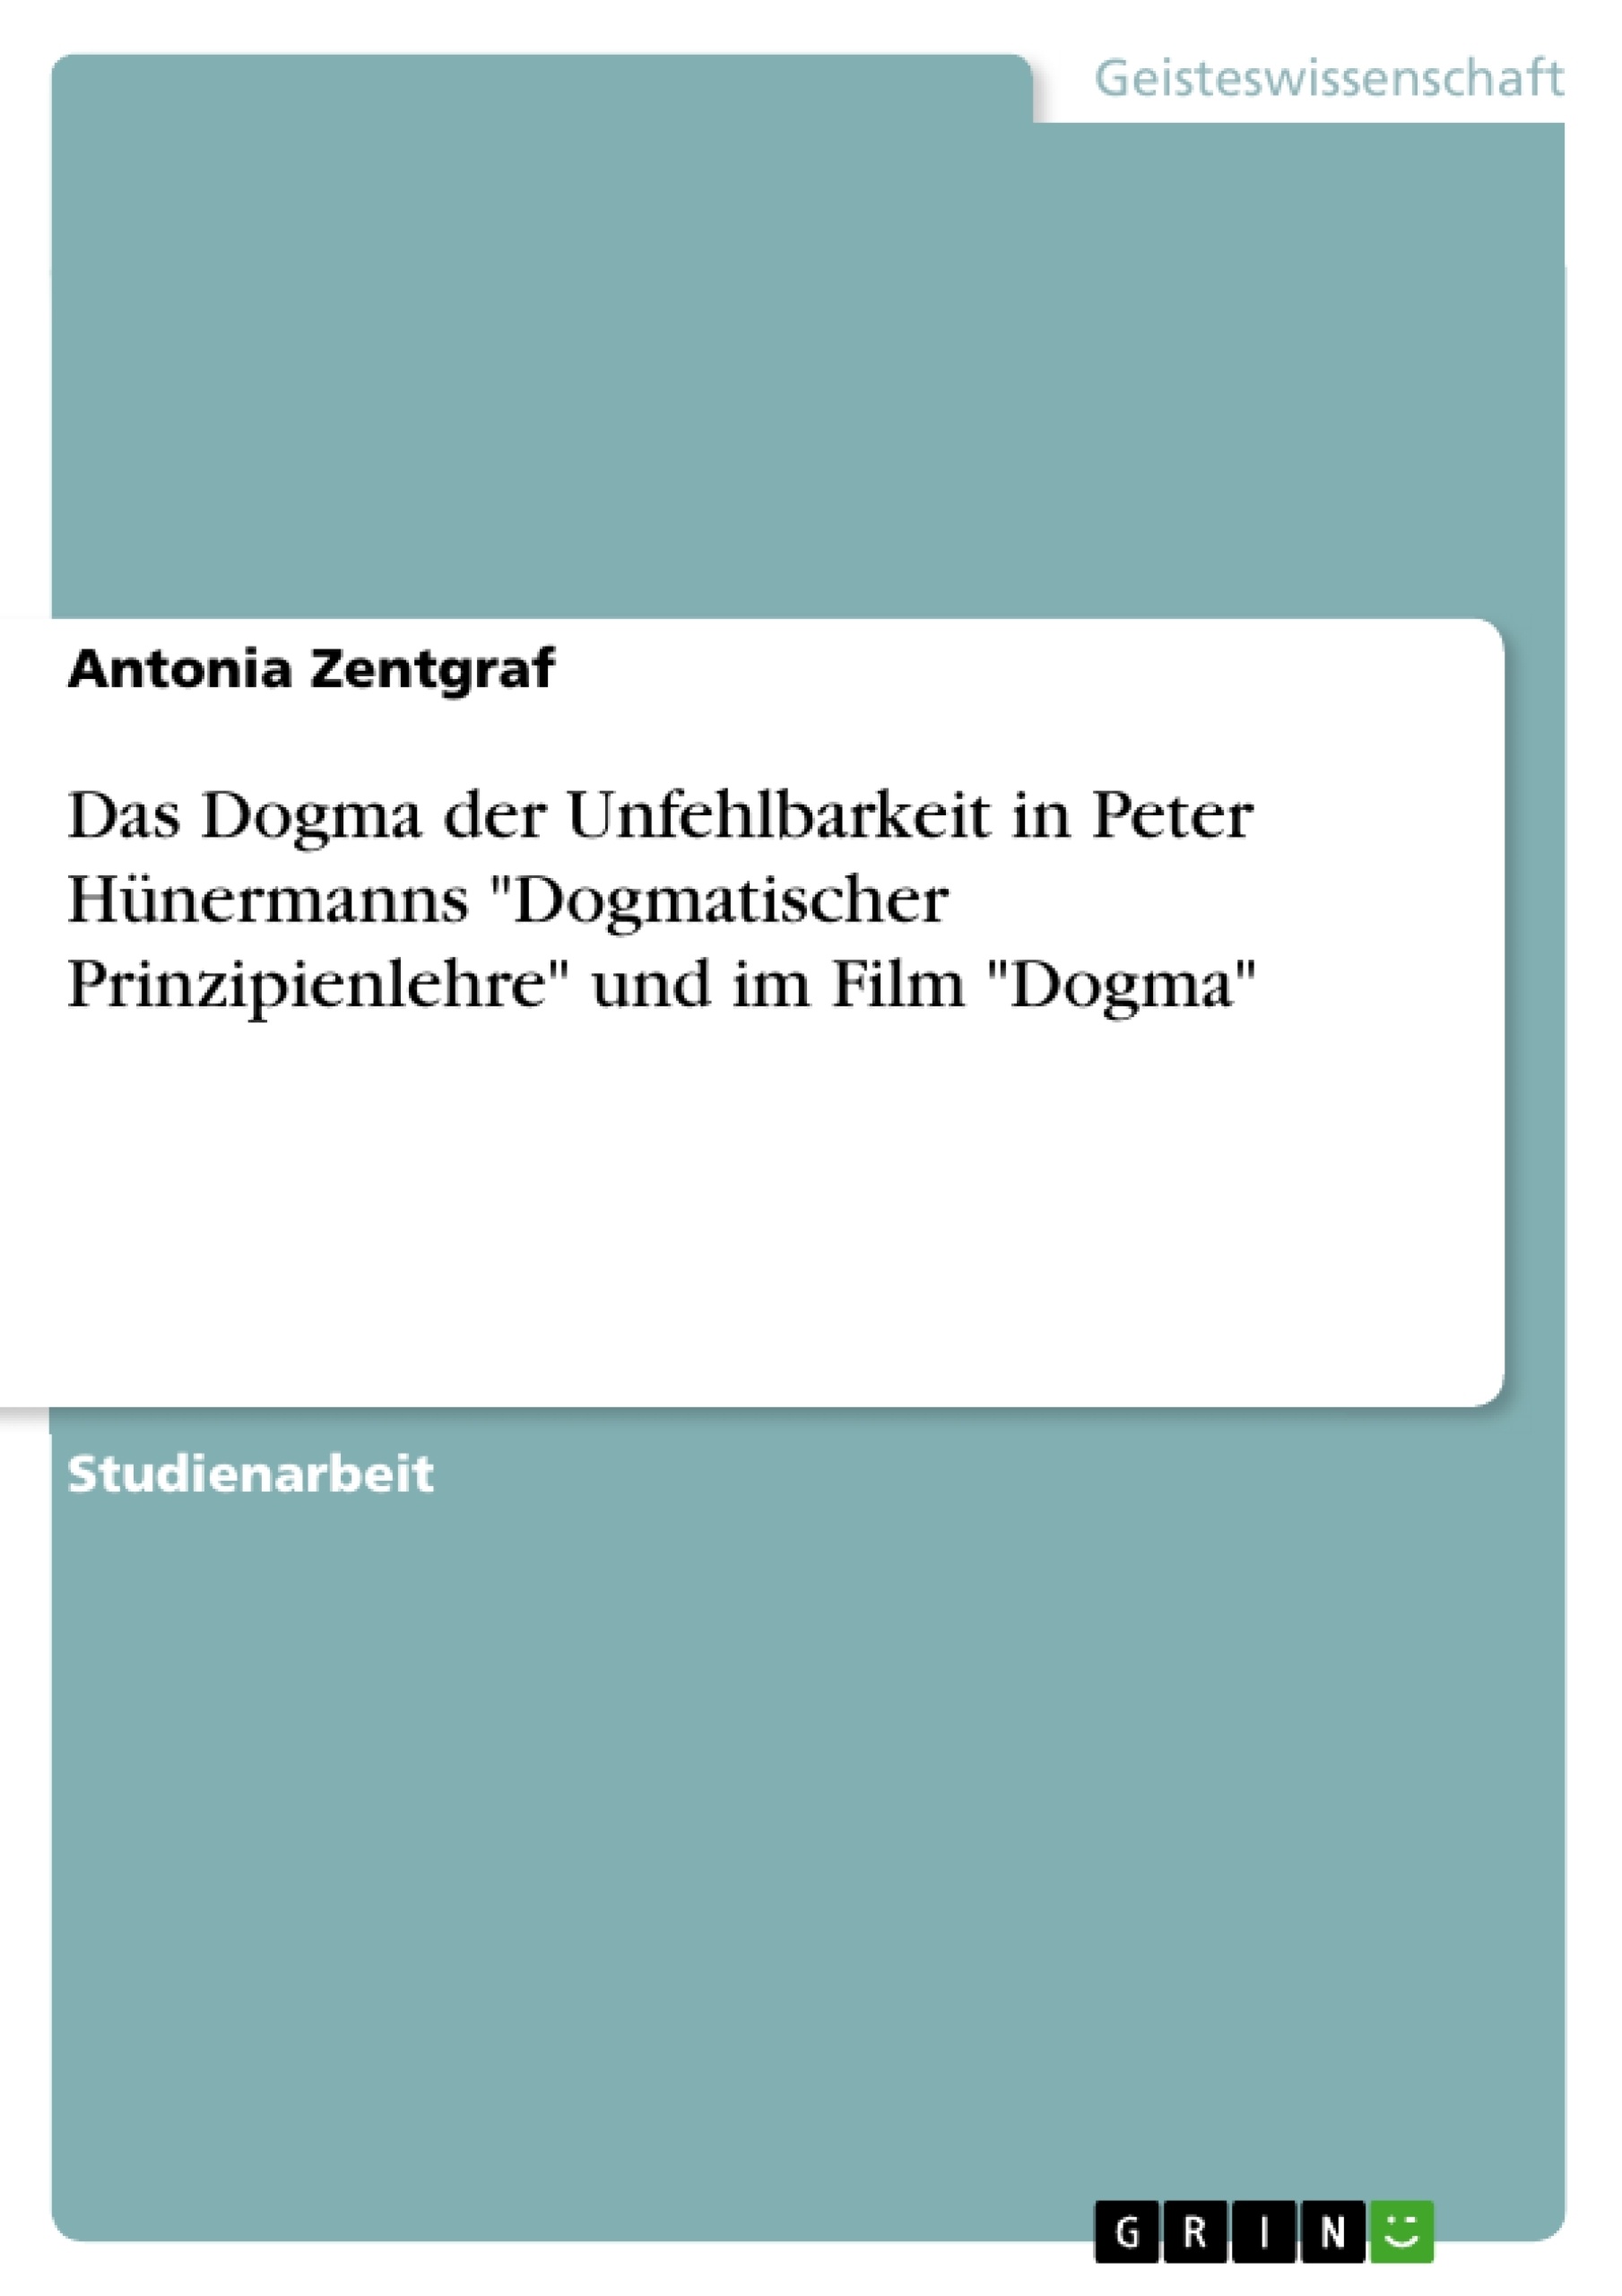 Title: Das Dogma der Unfehlbarkeit in Peter Hünermanns "Dogmatischer Prinzipienlehre" und im Film "Dogma"